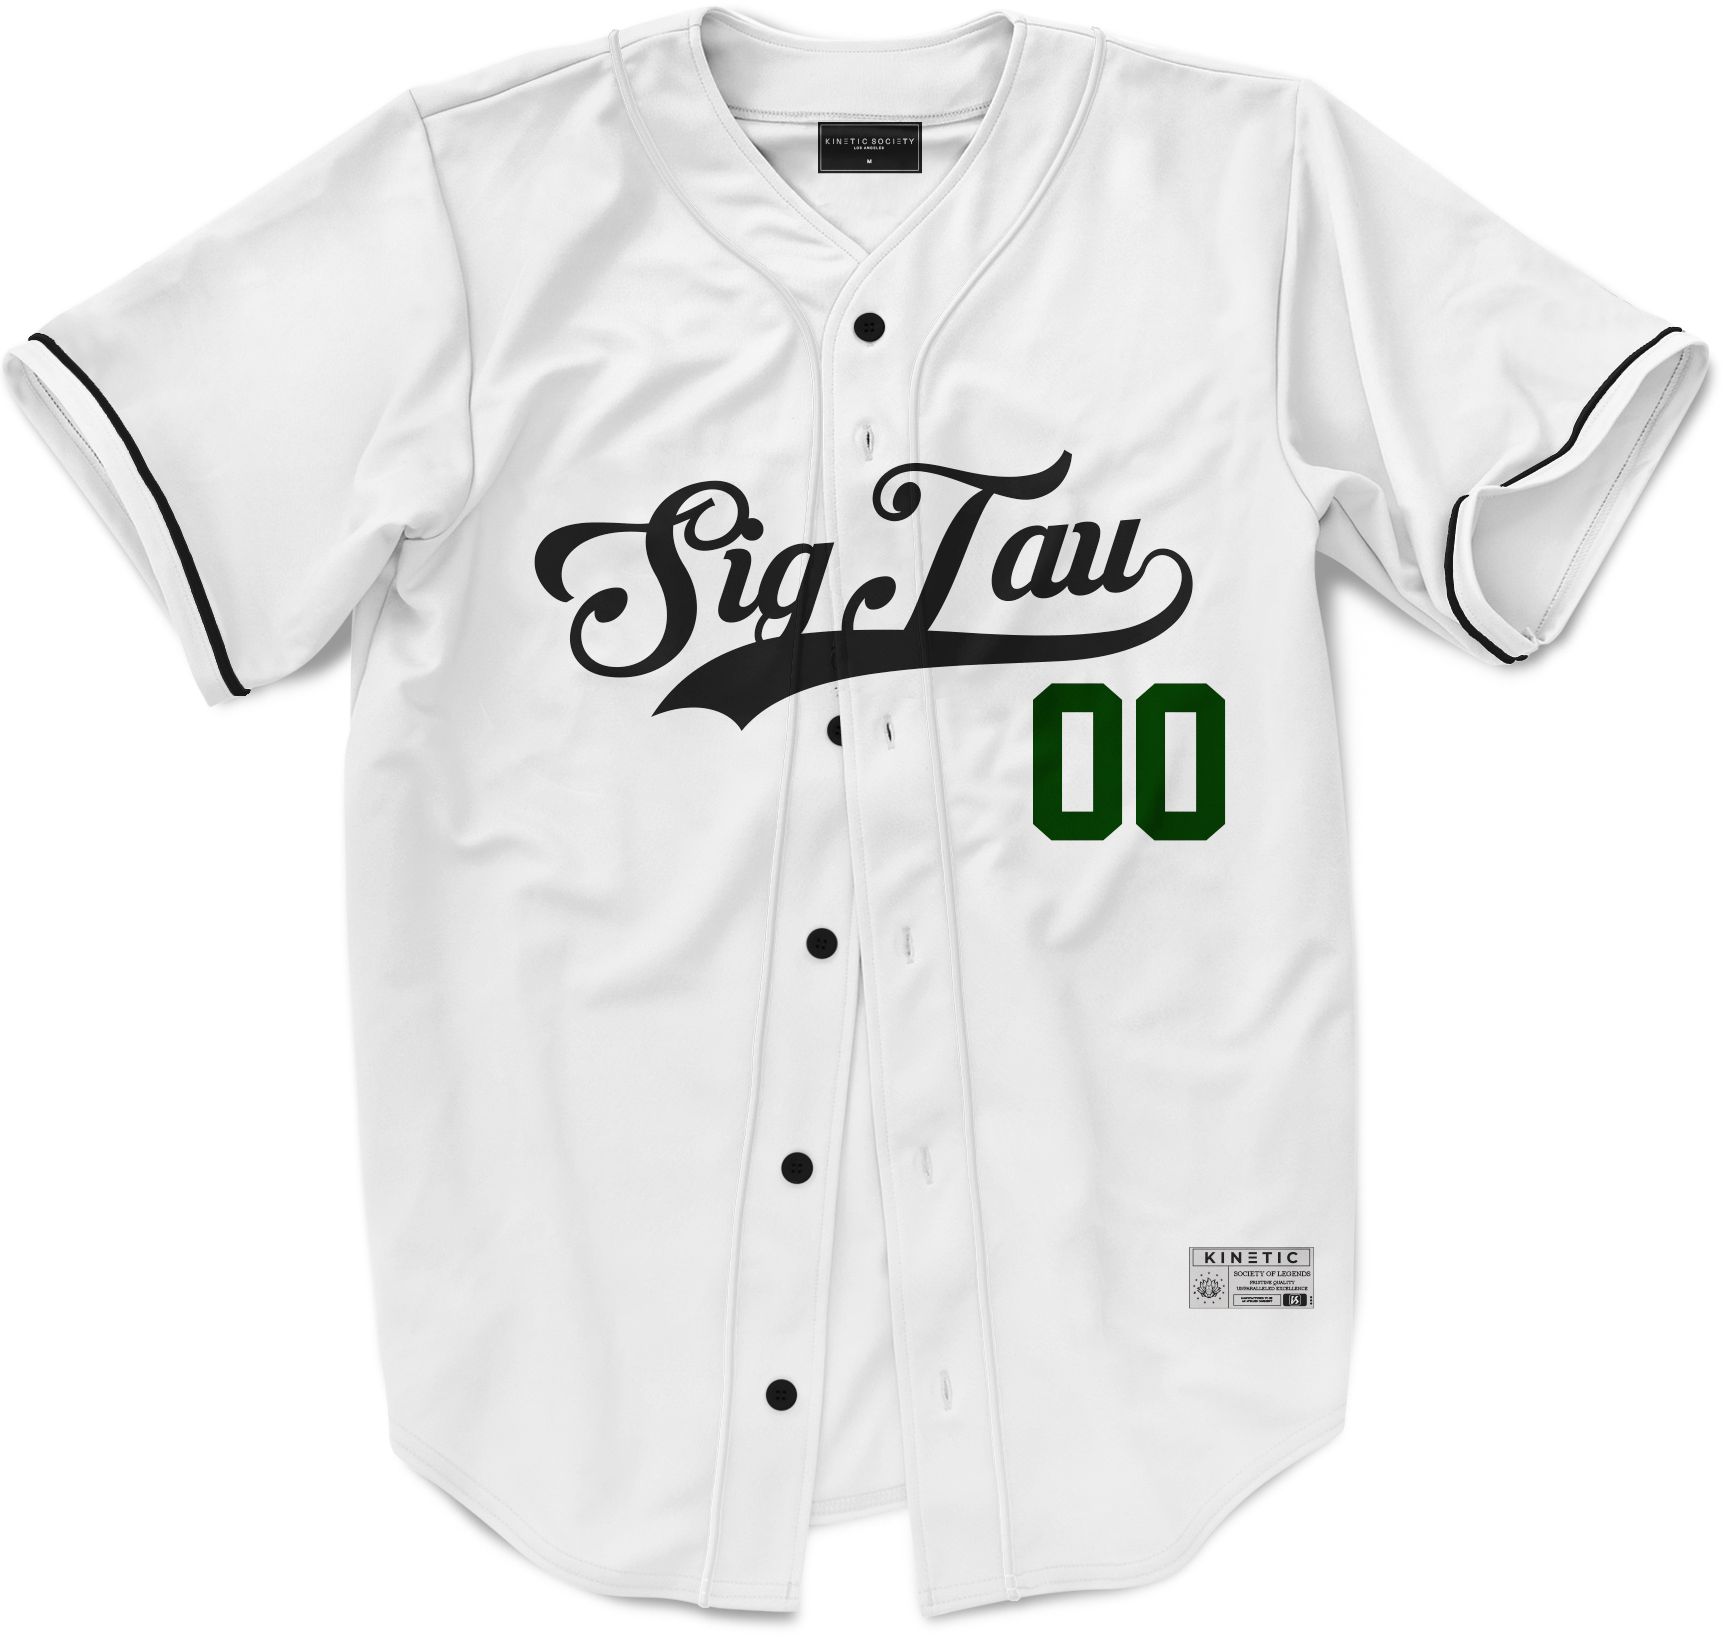 Sigma Tau Gamma - Classic Ballpark Green Baseball Jersey